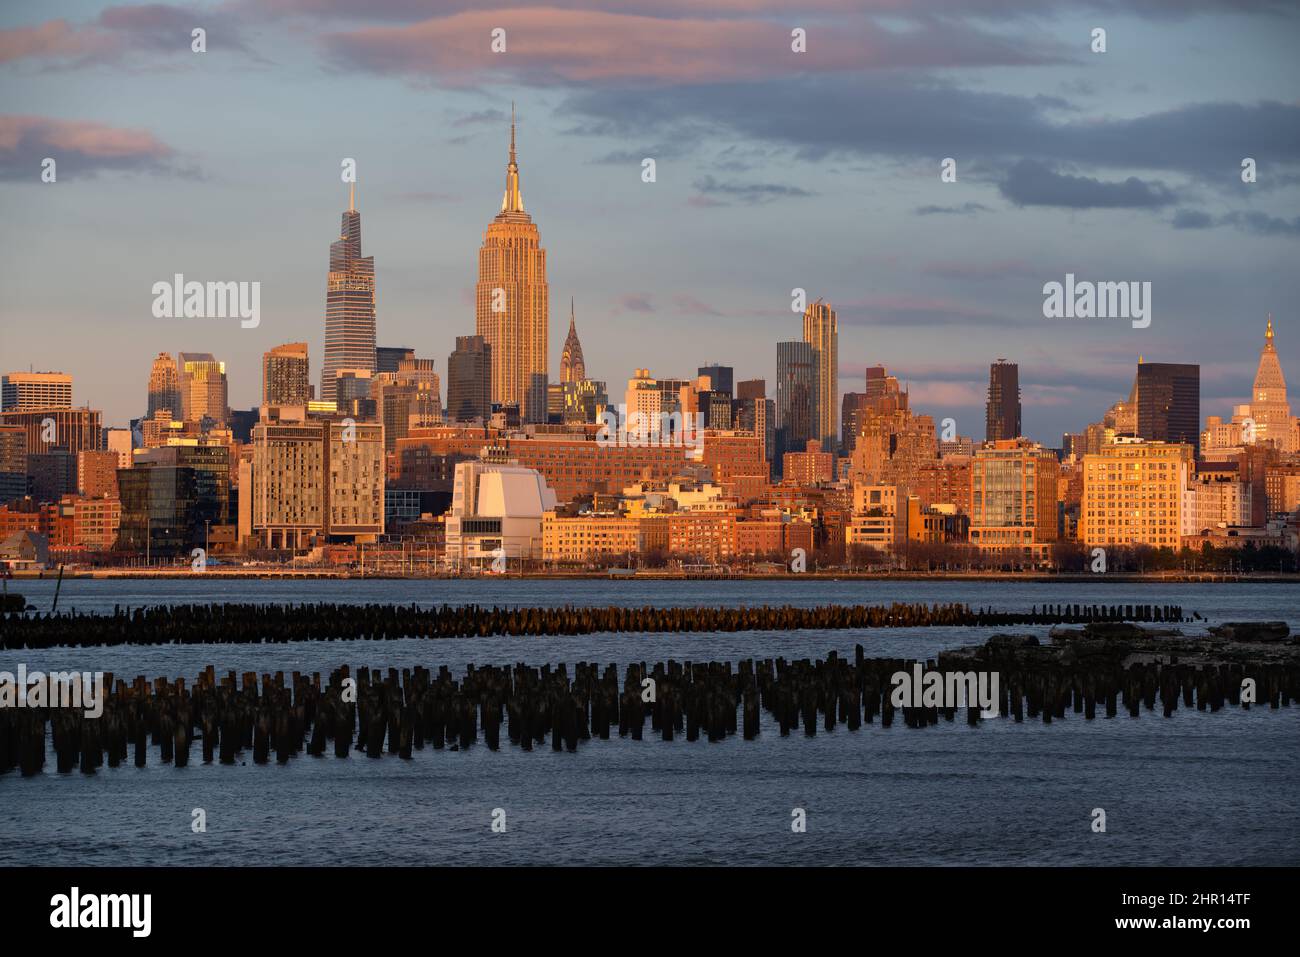 Sonnenuntergang über historischen Wolkenkratzern von Midtown Manhattan. New York City Stadtbild von der anderen Seite des Hudson River Stockfoto